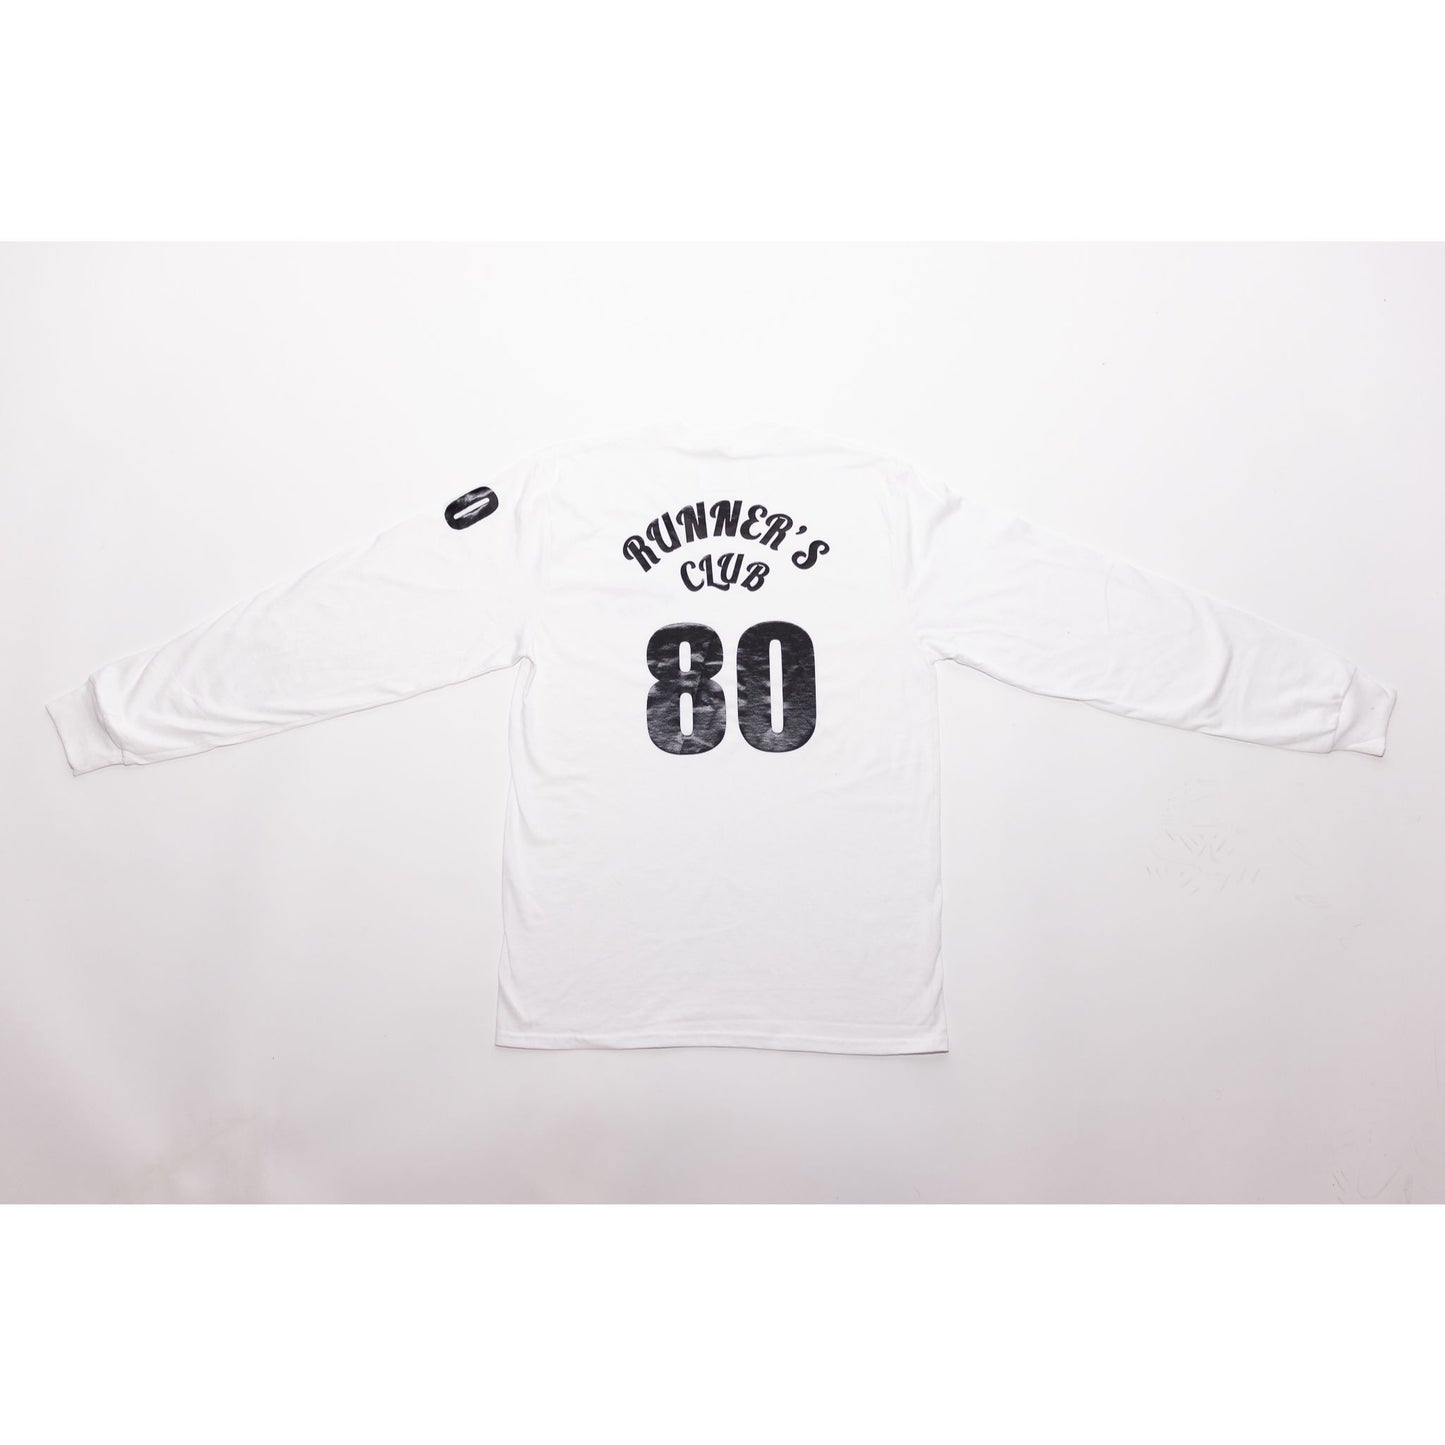 Runner'sClub 80s Long Sleeve Shirts